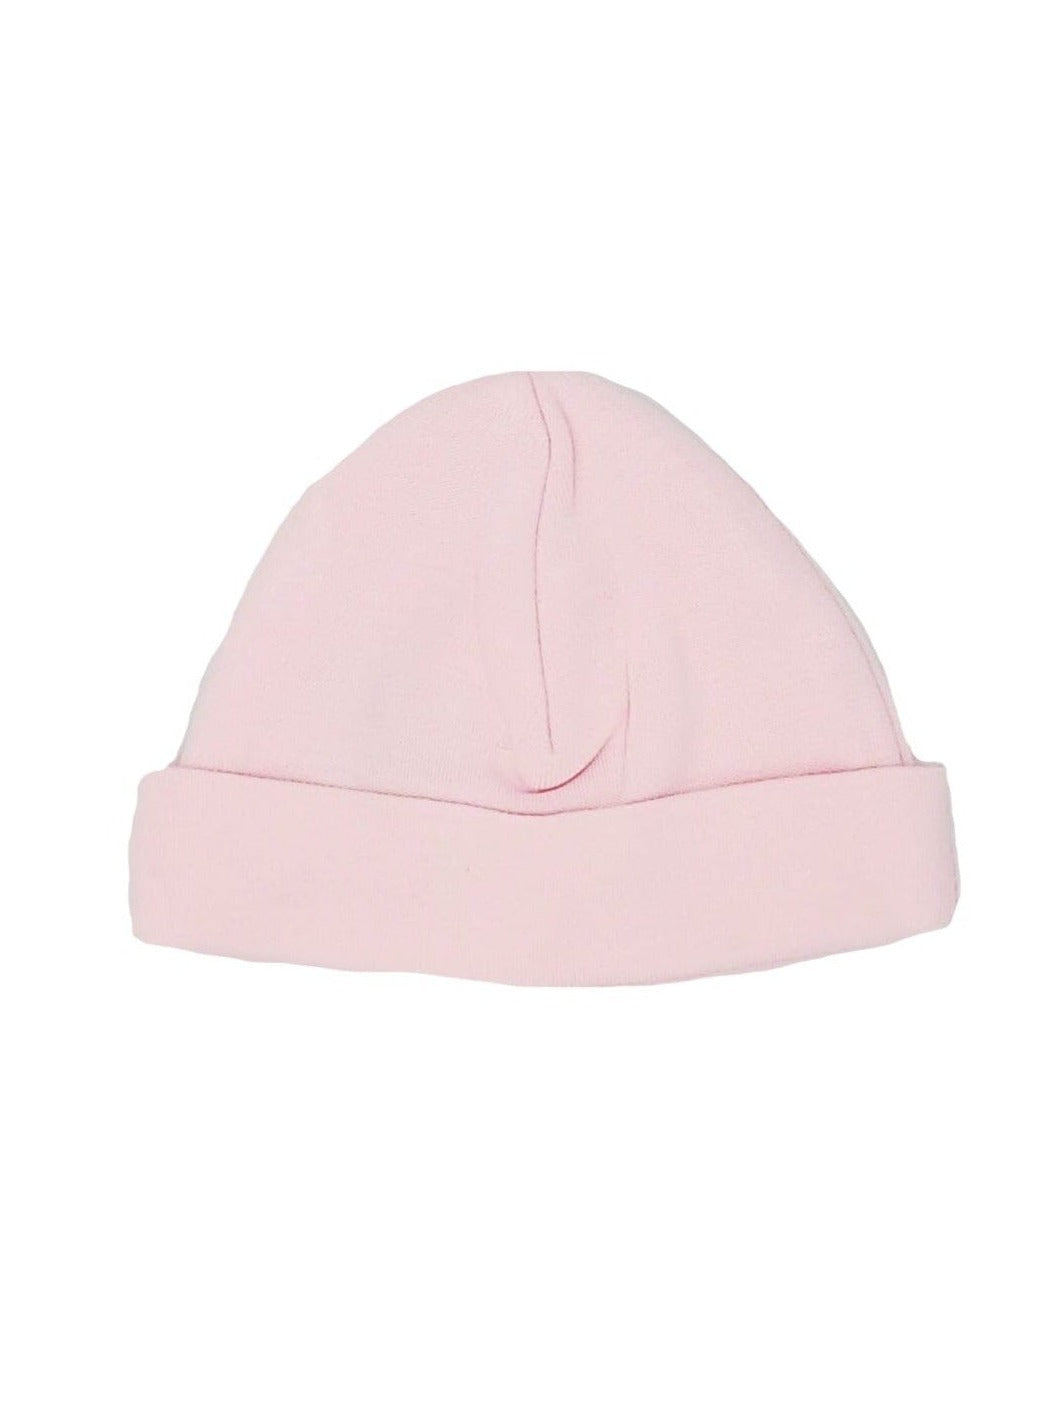 Pink Round Premature Baby Hat - Hat - Dandelion